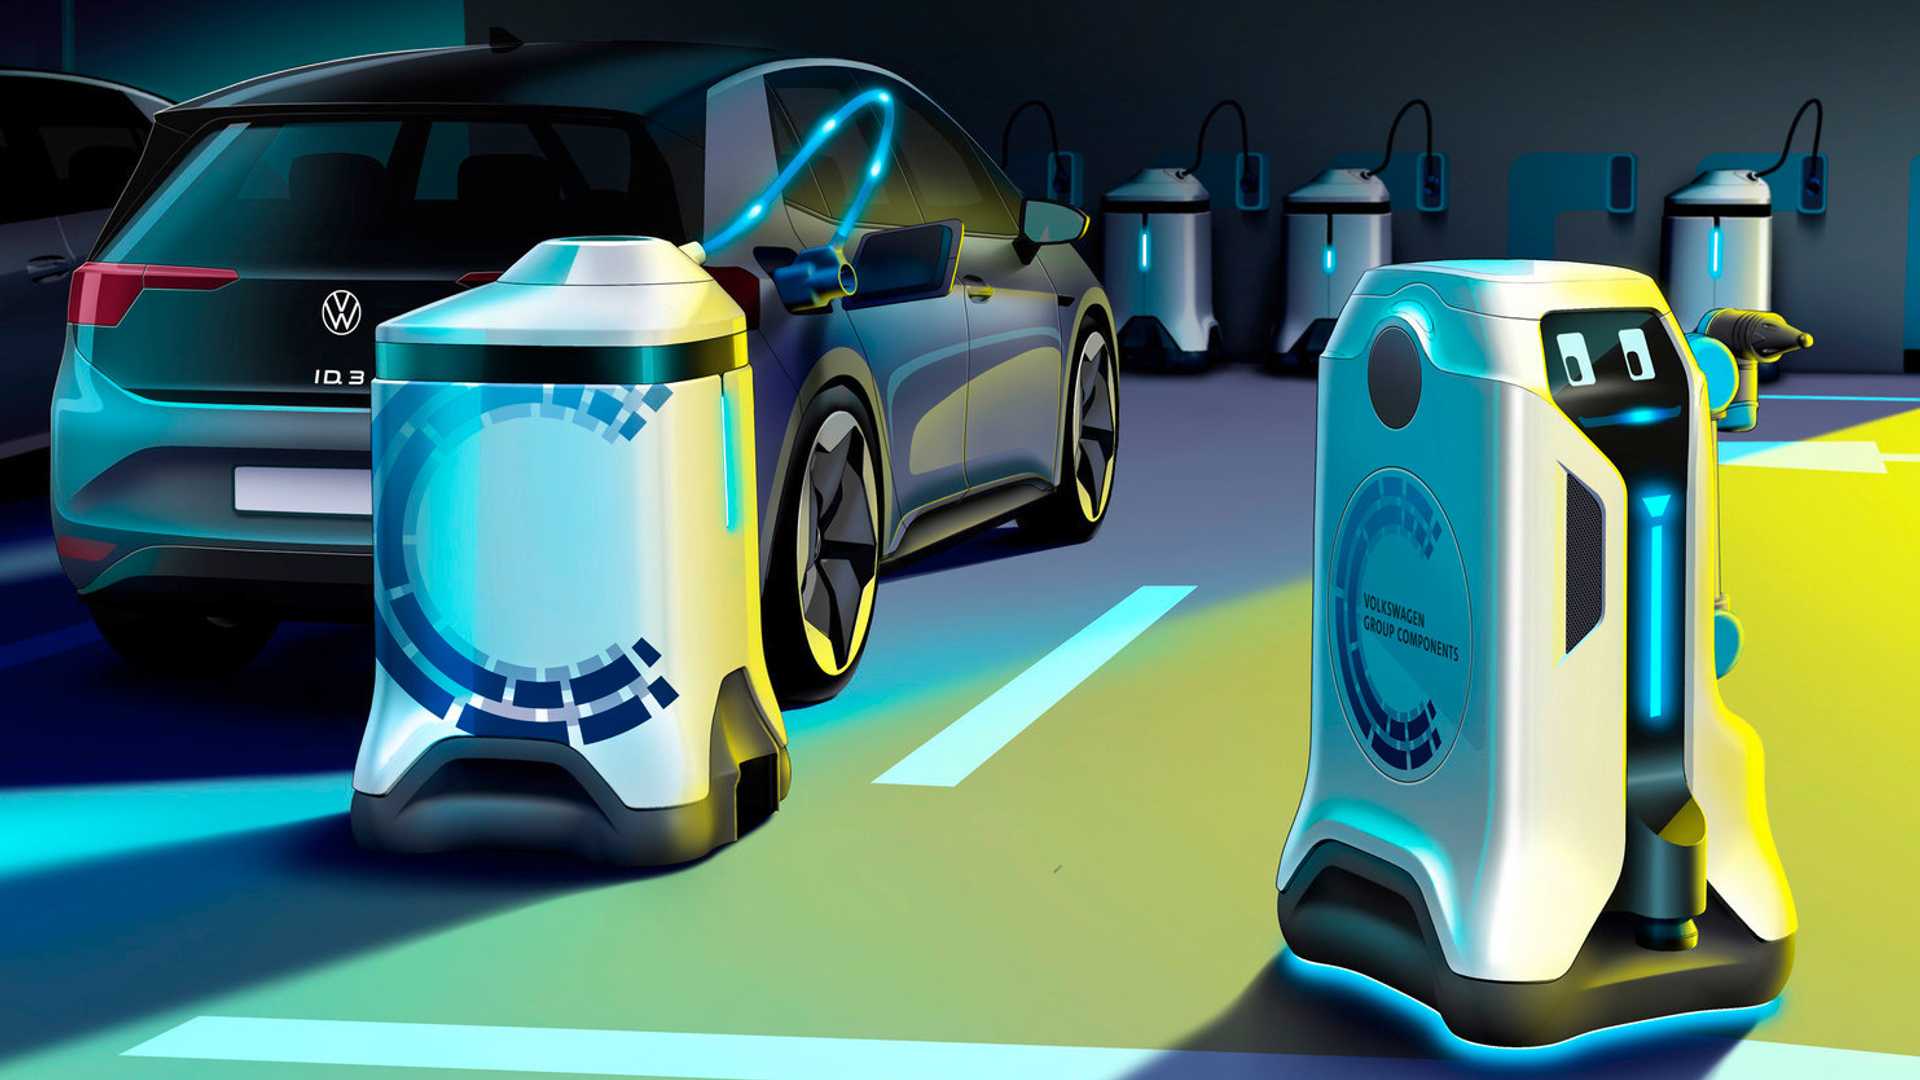 Volkswagen designs mobile charging robot